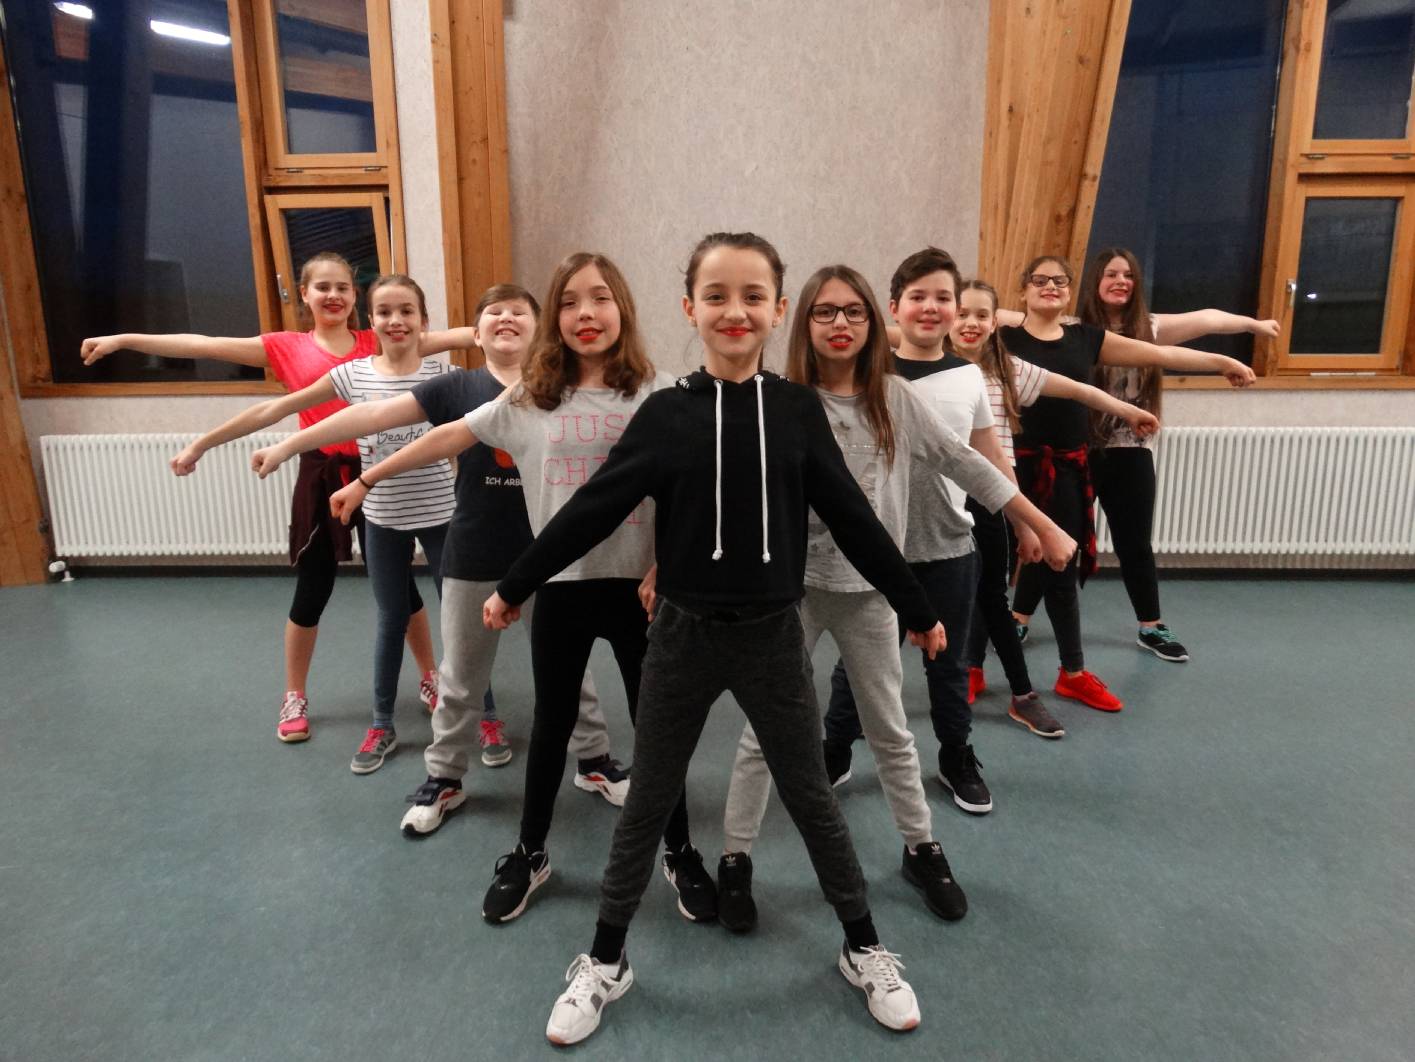 Ihre Kinder sind begeistert von Hip-Hop und möchten ihn tanzen lernen? Dann kommen Sie zu unserer Tanzschule in Köln!